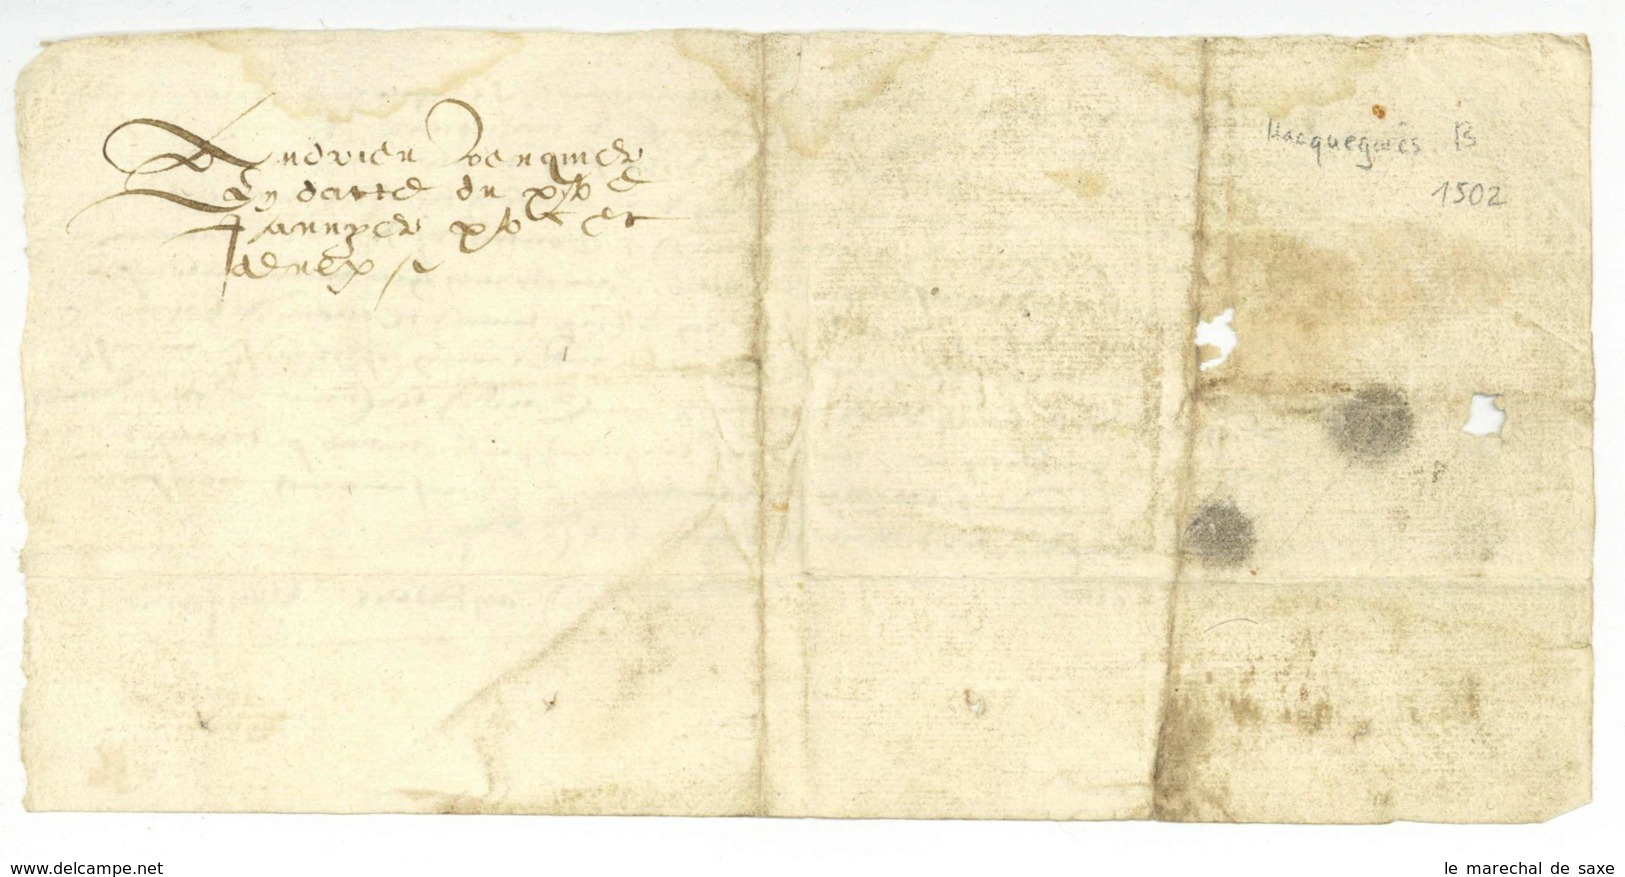 Hacquegnies ATH Belgique 1502 Foy Et Hommage Andrieu Venquiere A M De TRAZEGNIES - Manuscritos